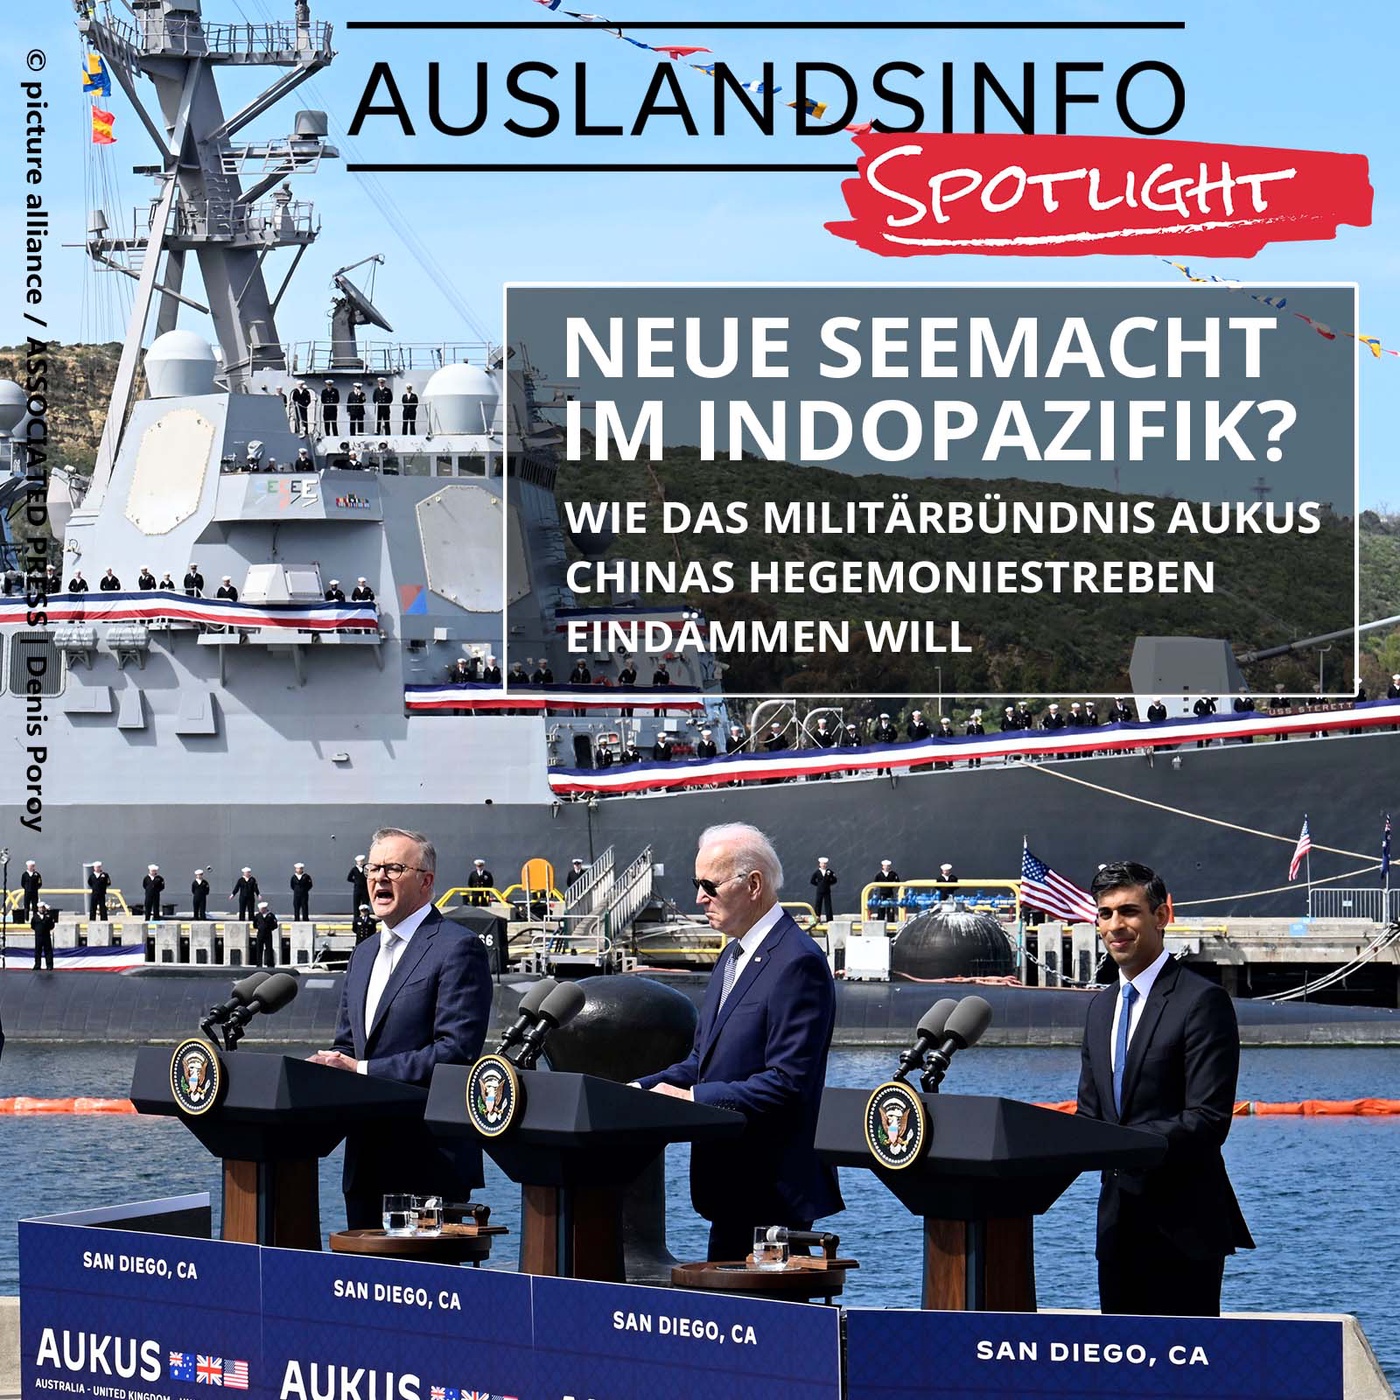 Neue Seemacht im Indopazifik? Wie das Militärbündnis AUKUS Chinas Hegemoniestreben eindämmen will